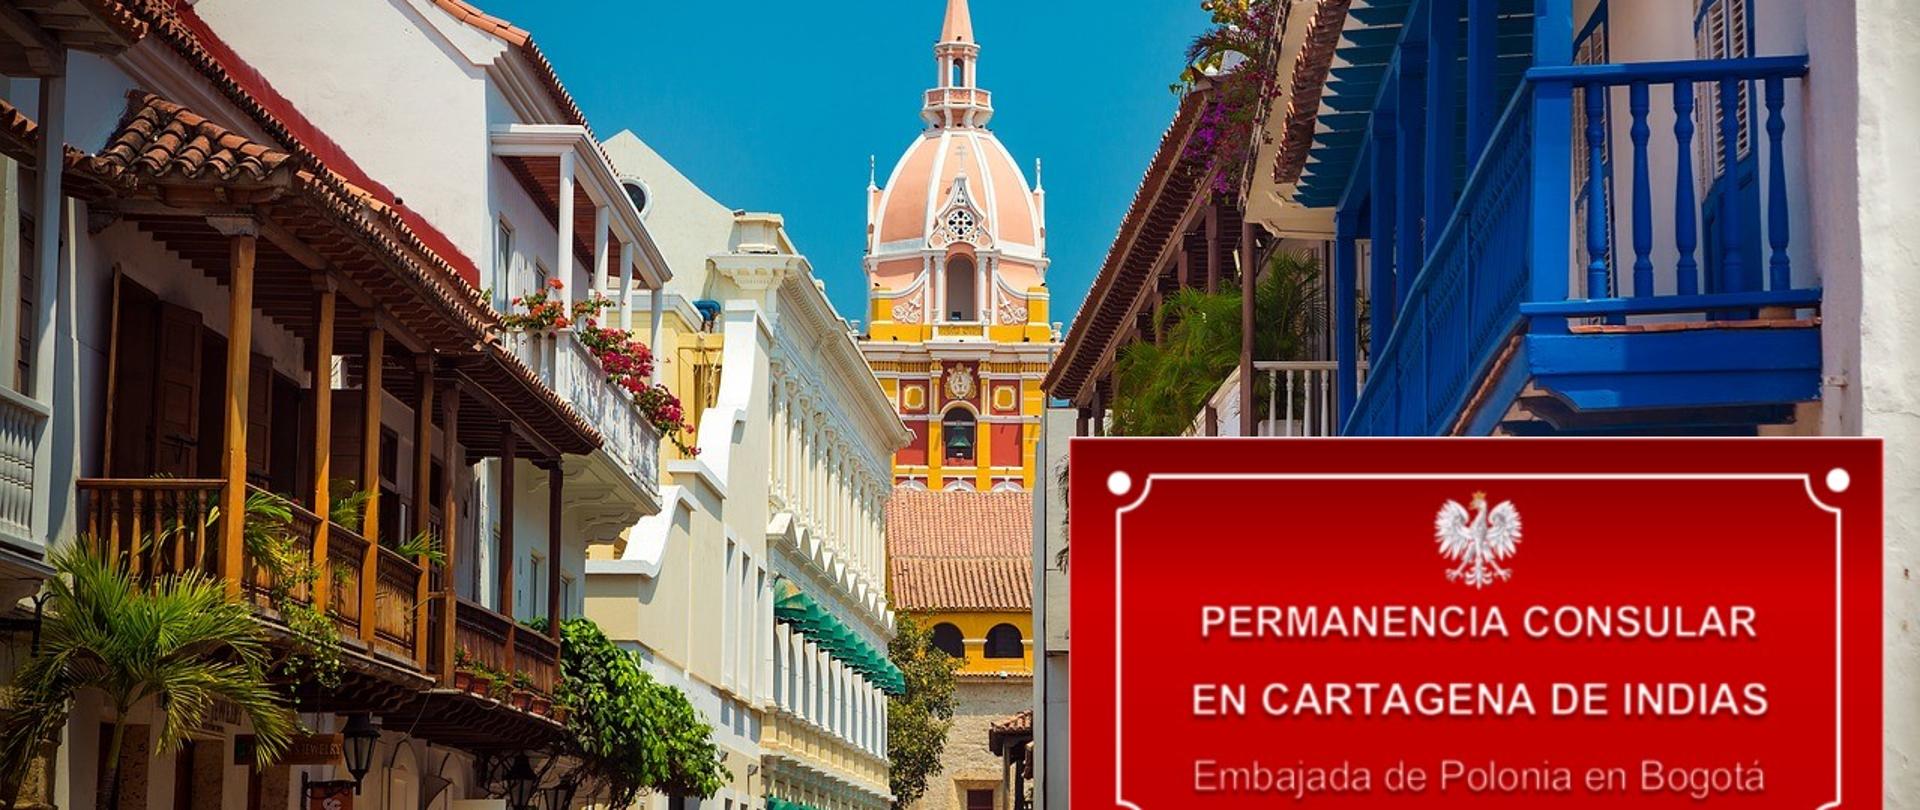 Permanencia Consular en Cartagena